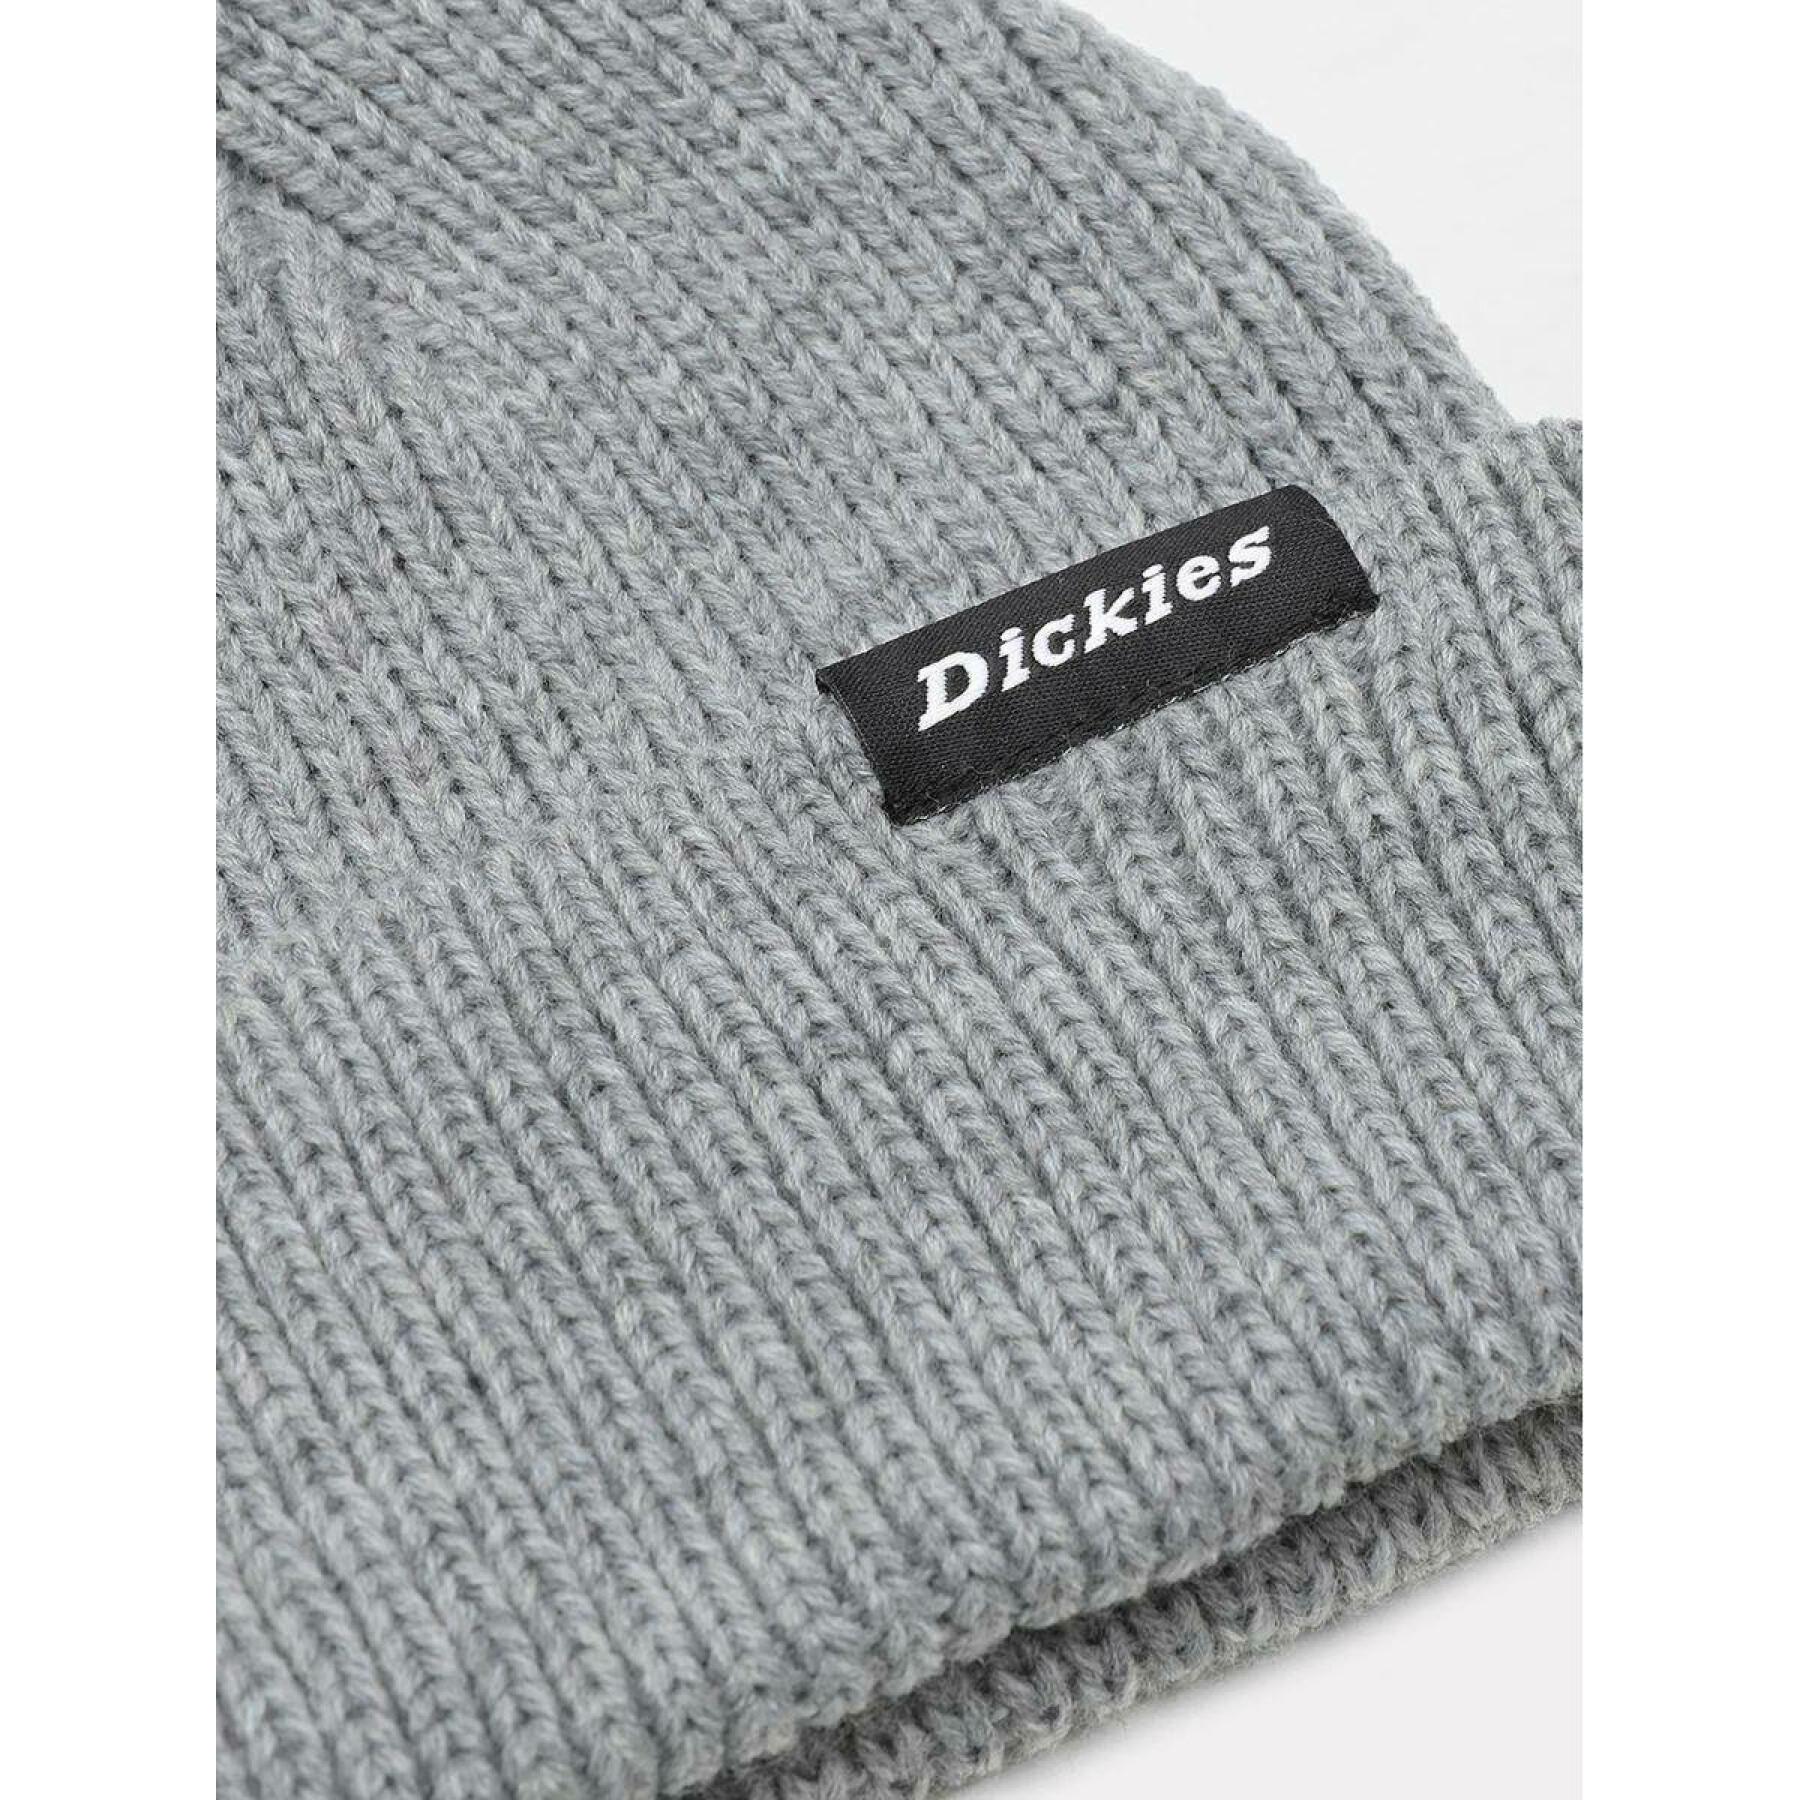 Mütze Dickies Woodworth